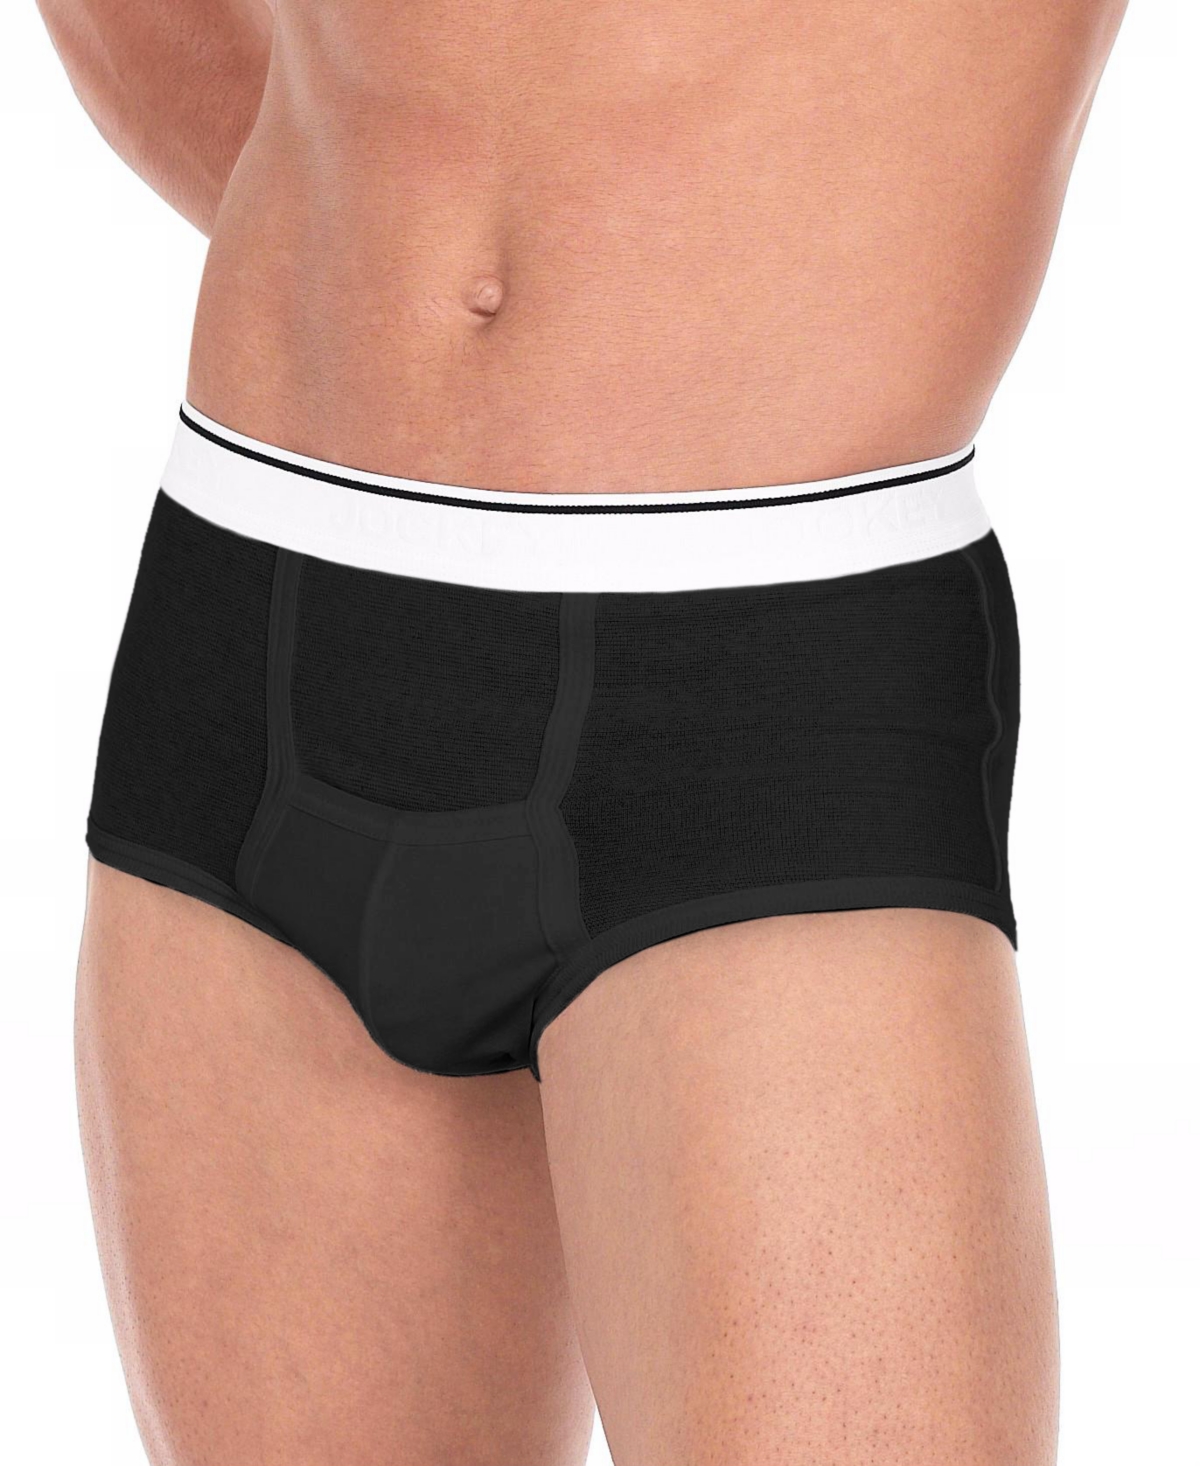 Men's Underwear, Pouch Briefs 3 Pack - White